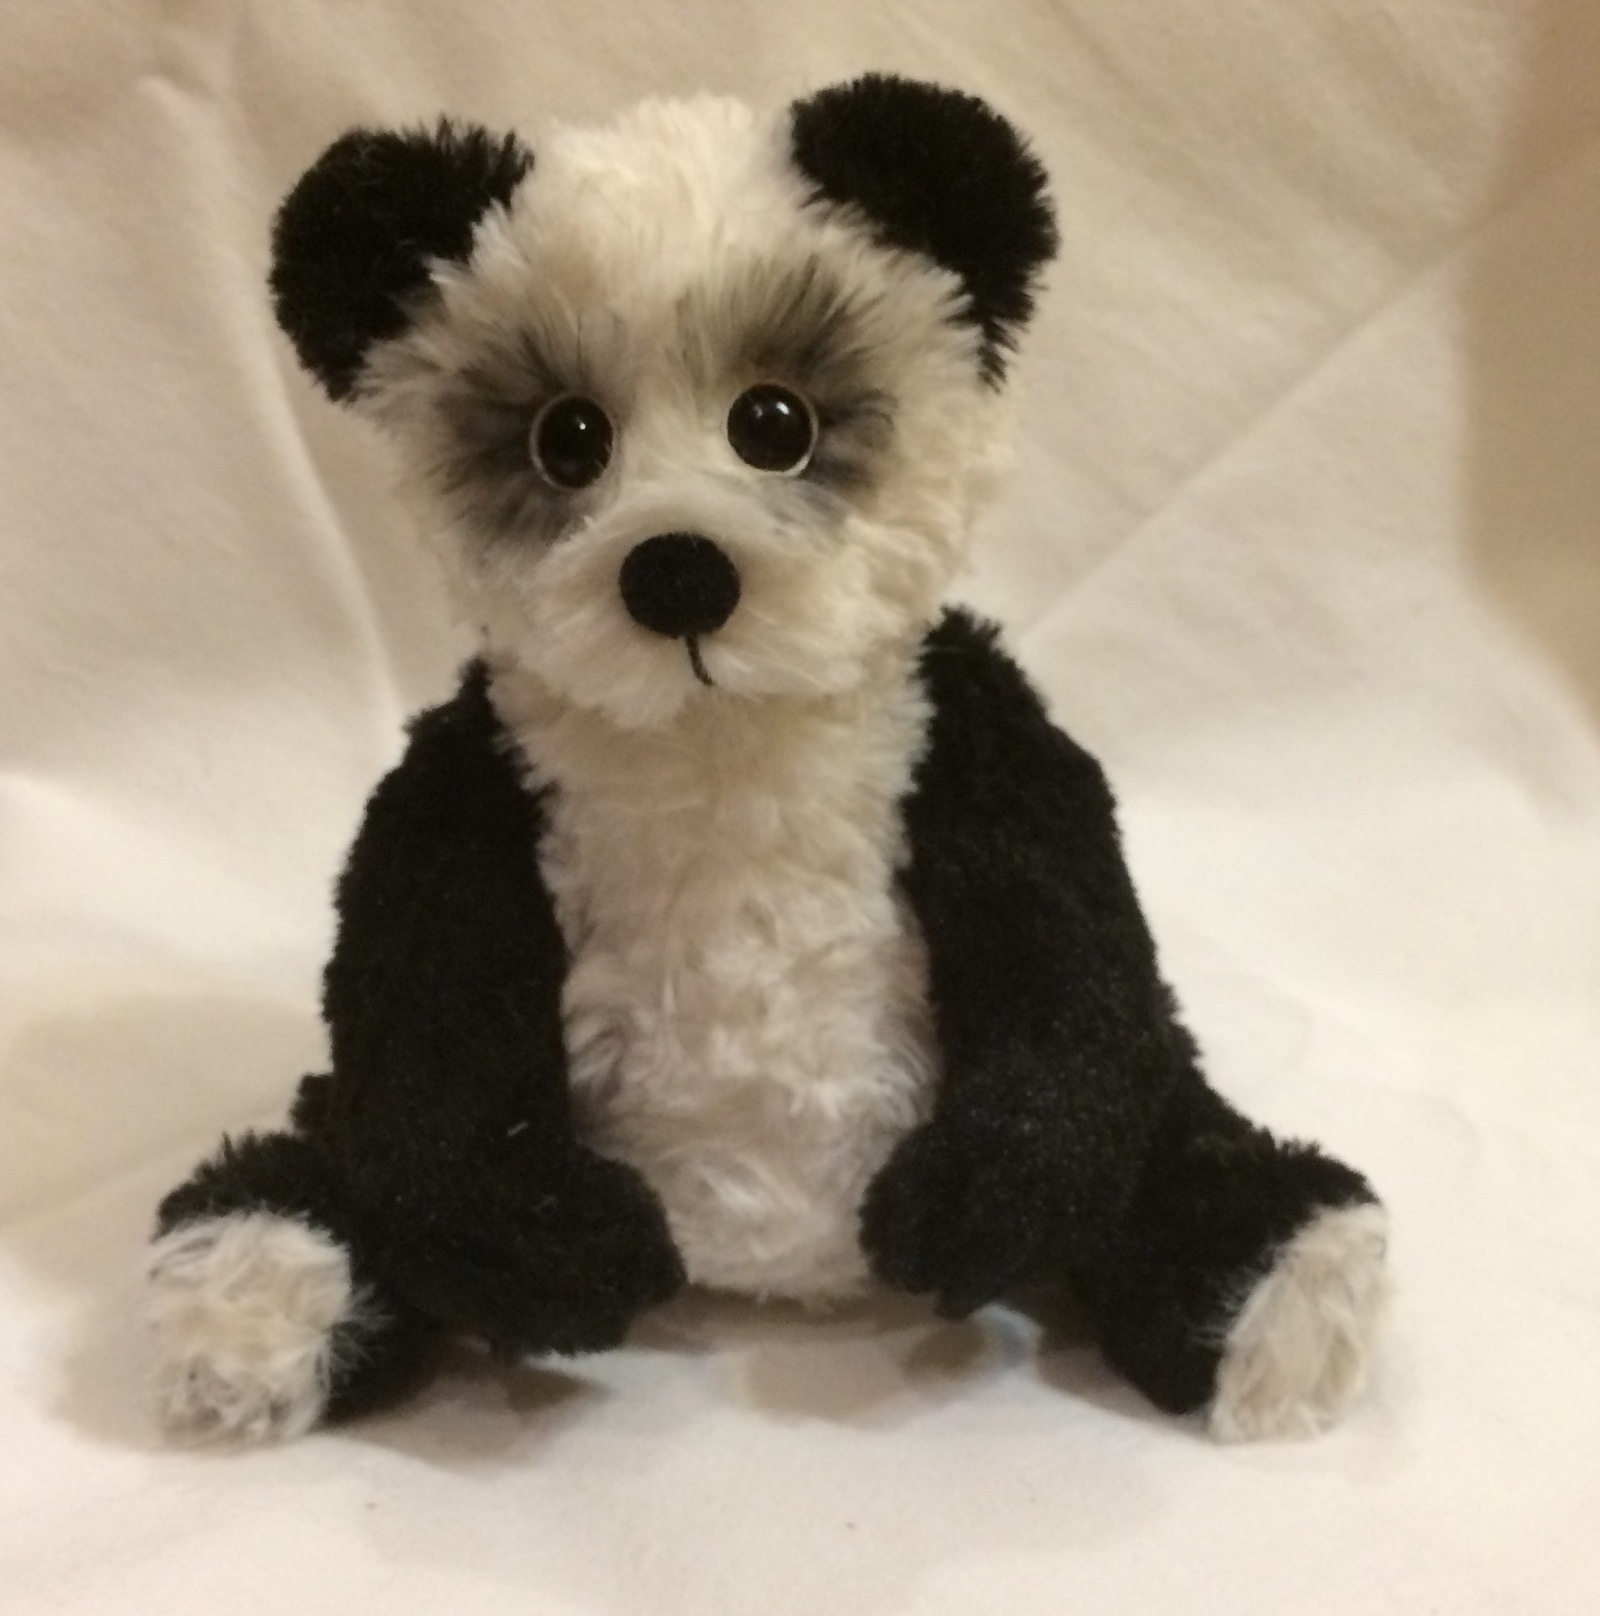 Miracle panda handmade. - My, Soft toy, Author's toy, Handmade, The Bears, Panda, Needlework, , Longpost